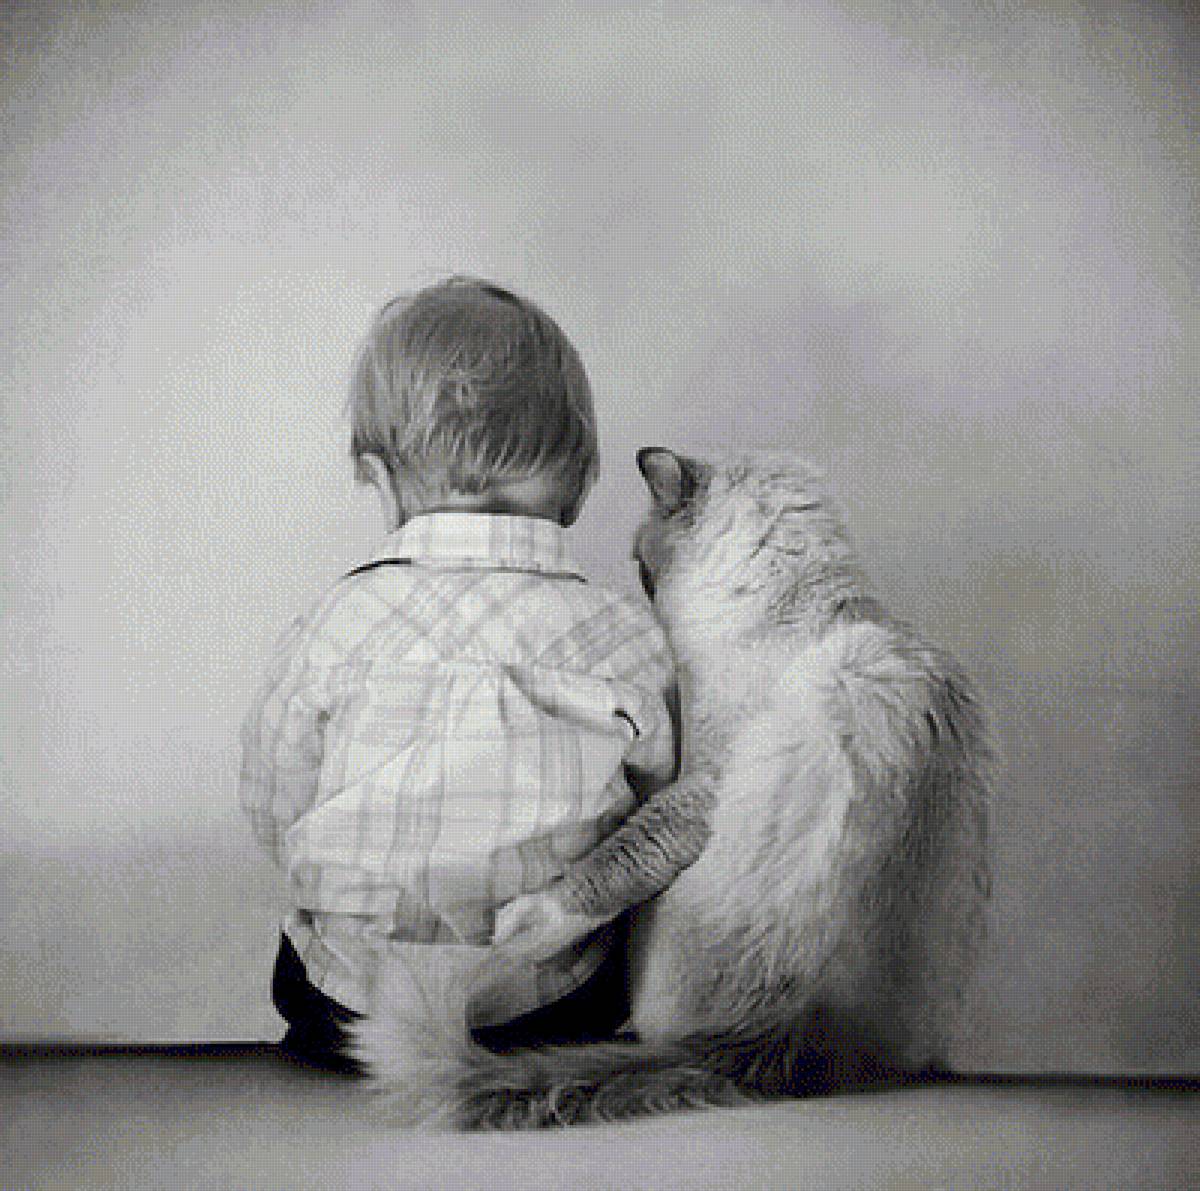 Тоже счастье. Ребенок обнимает кота. Мальчик обнимает кота. Добрые объятия. Поддержка в трудную минуту.